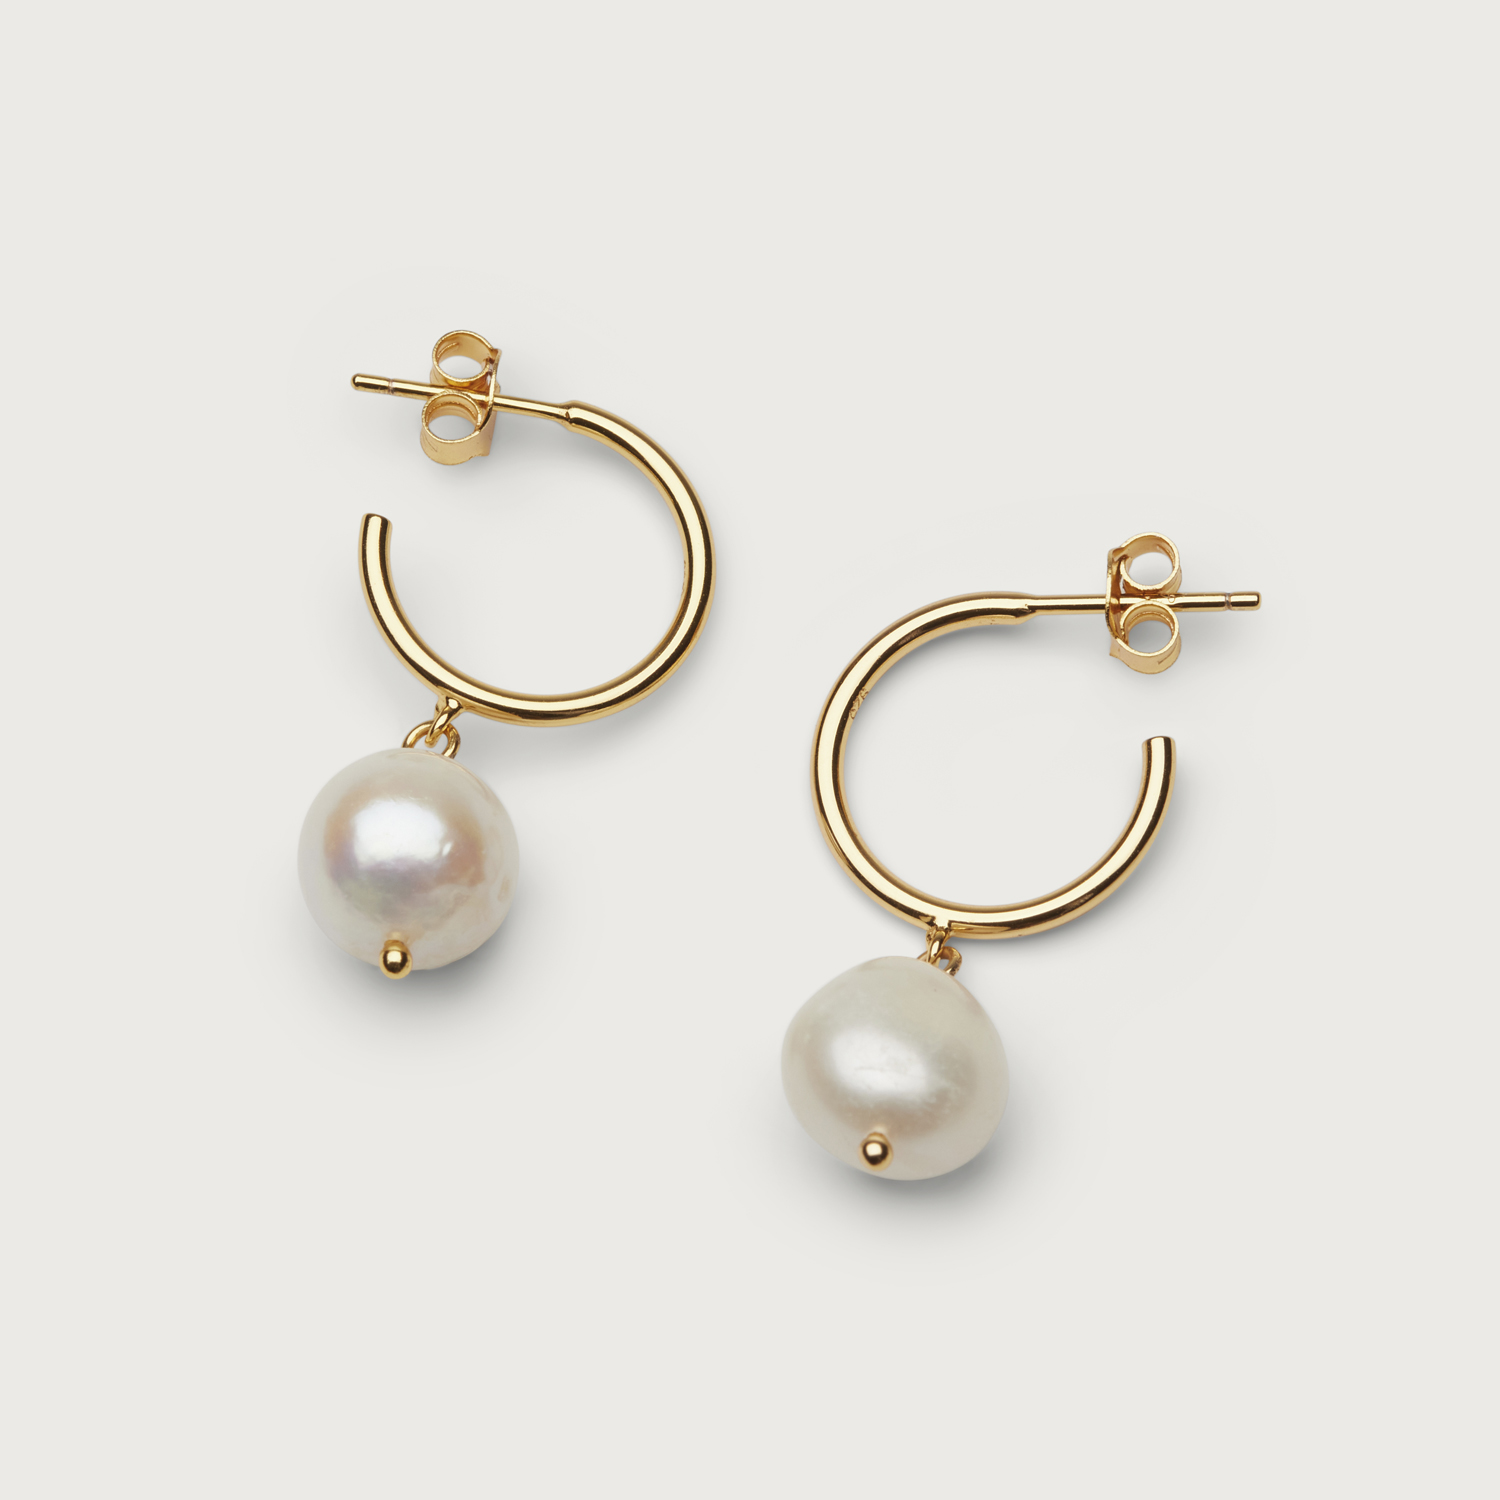 Pearly hoops earrings